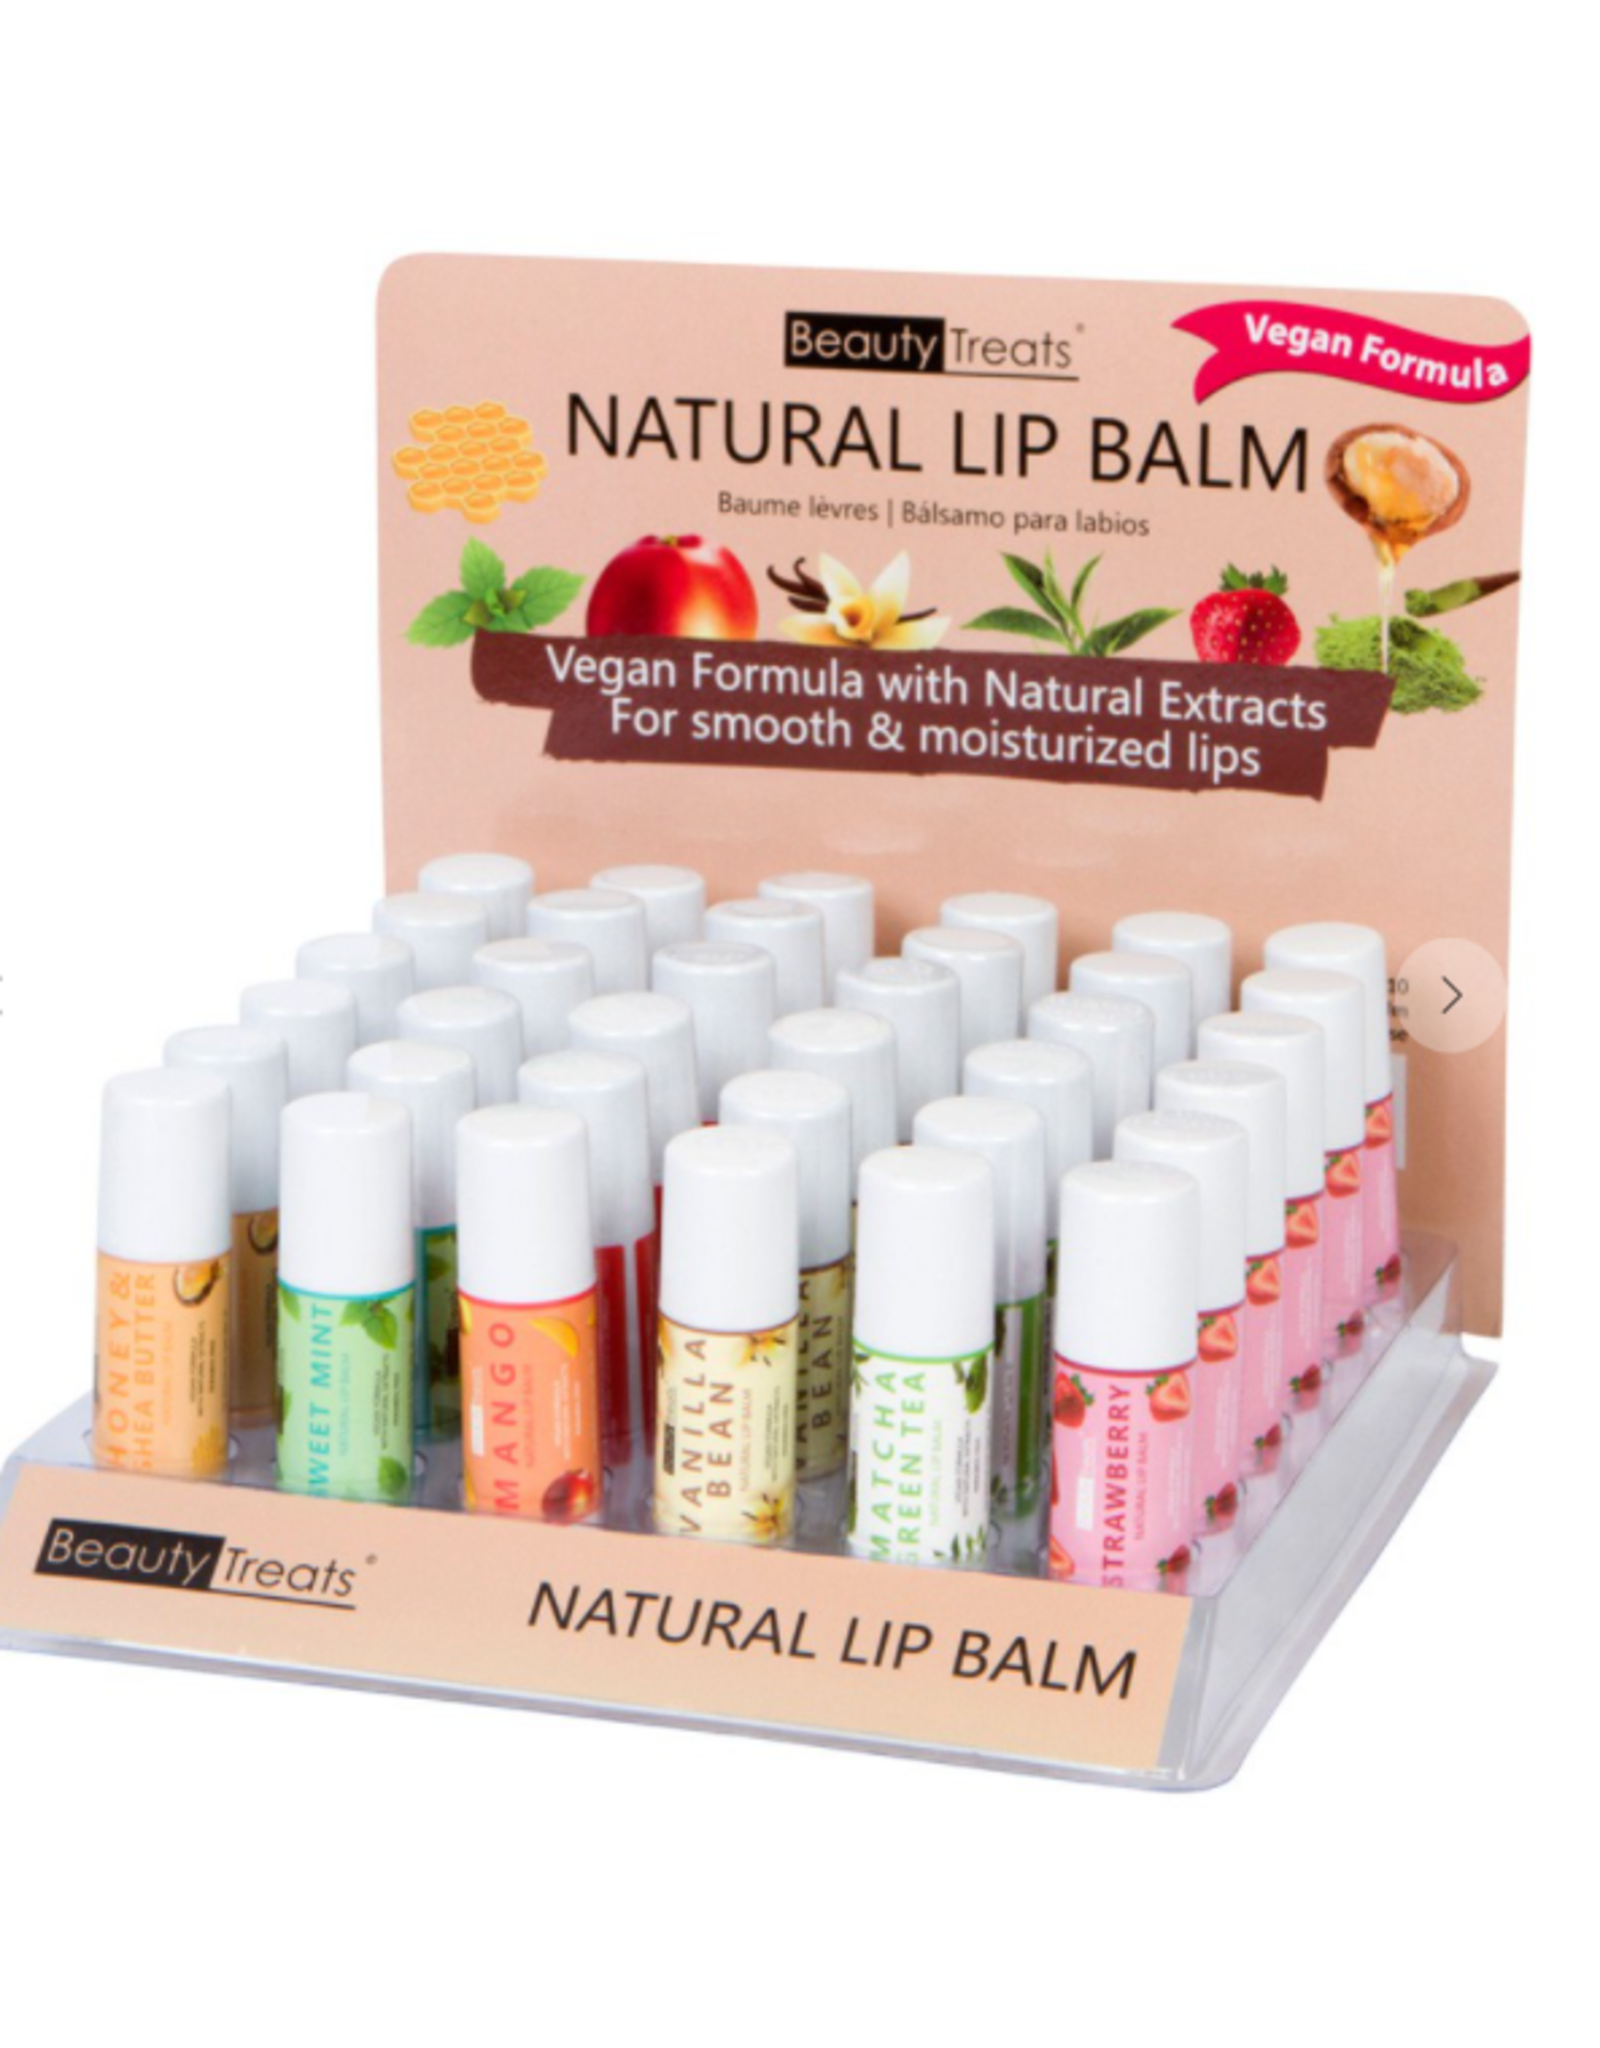 Beauty Treats Beauty treats Natural Lip Balm